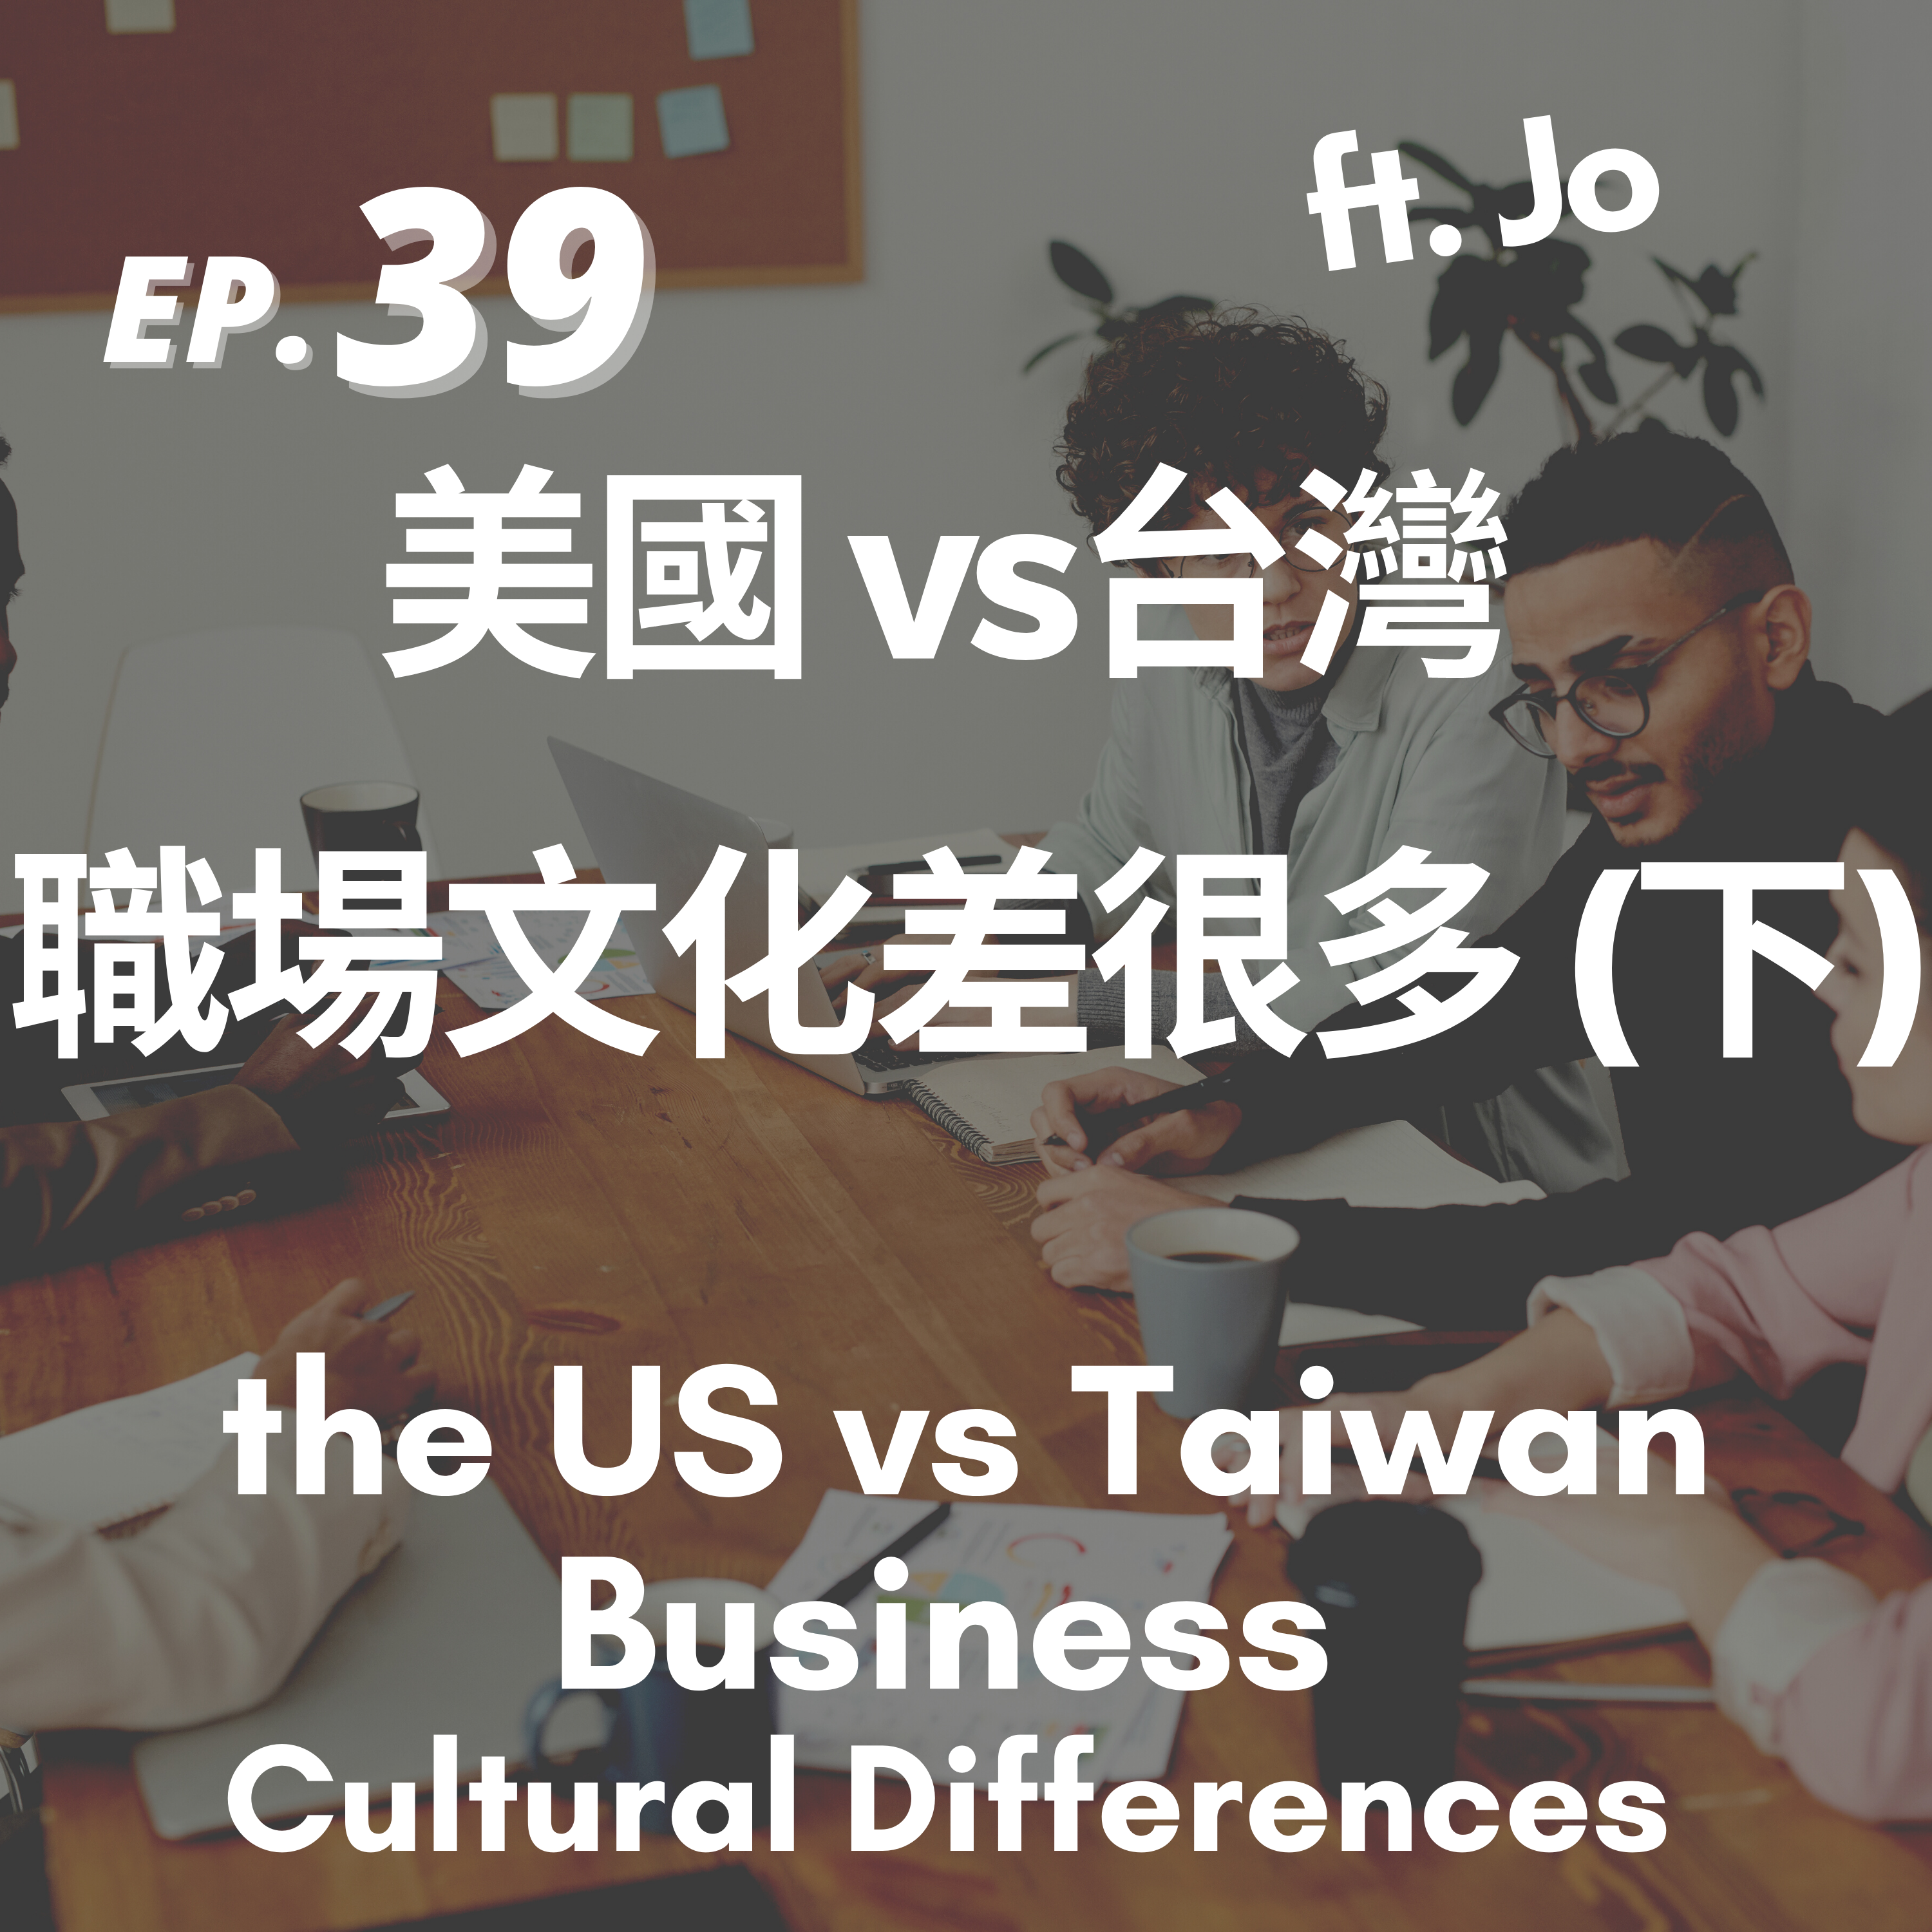 39. 職場文化差很多|美國 vs 台灣(下) Business Cultural Differences #2 the US vs Taiwan ft. Jo